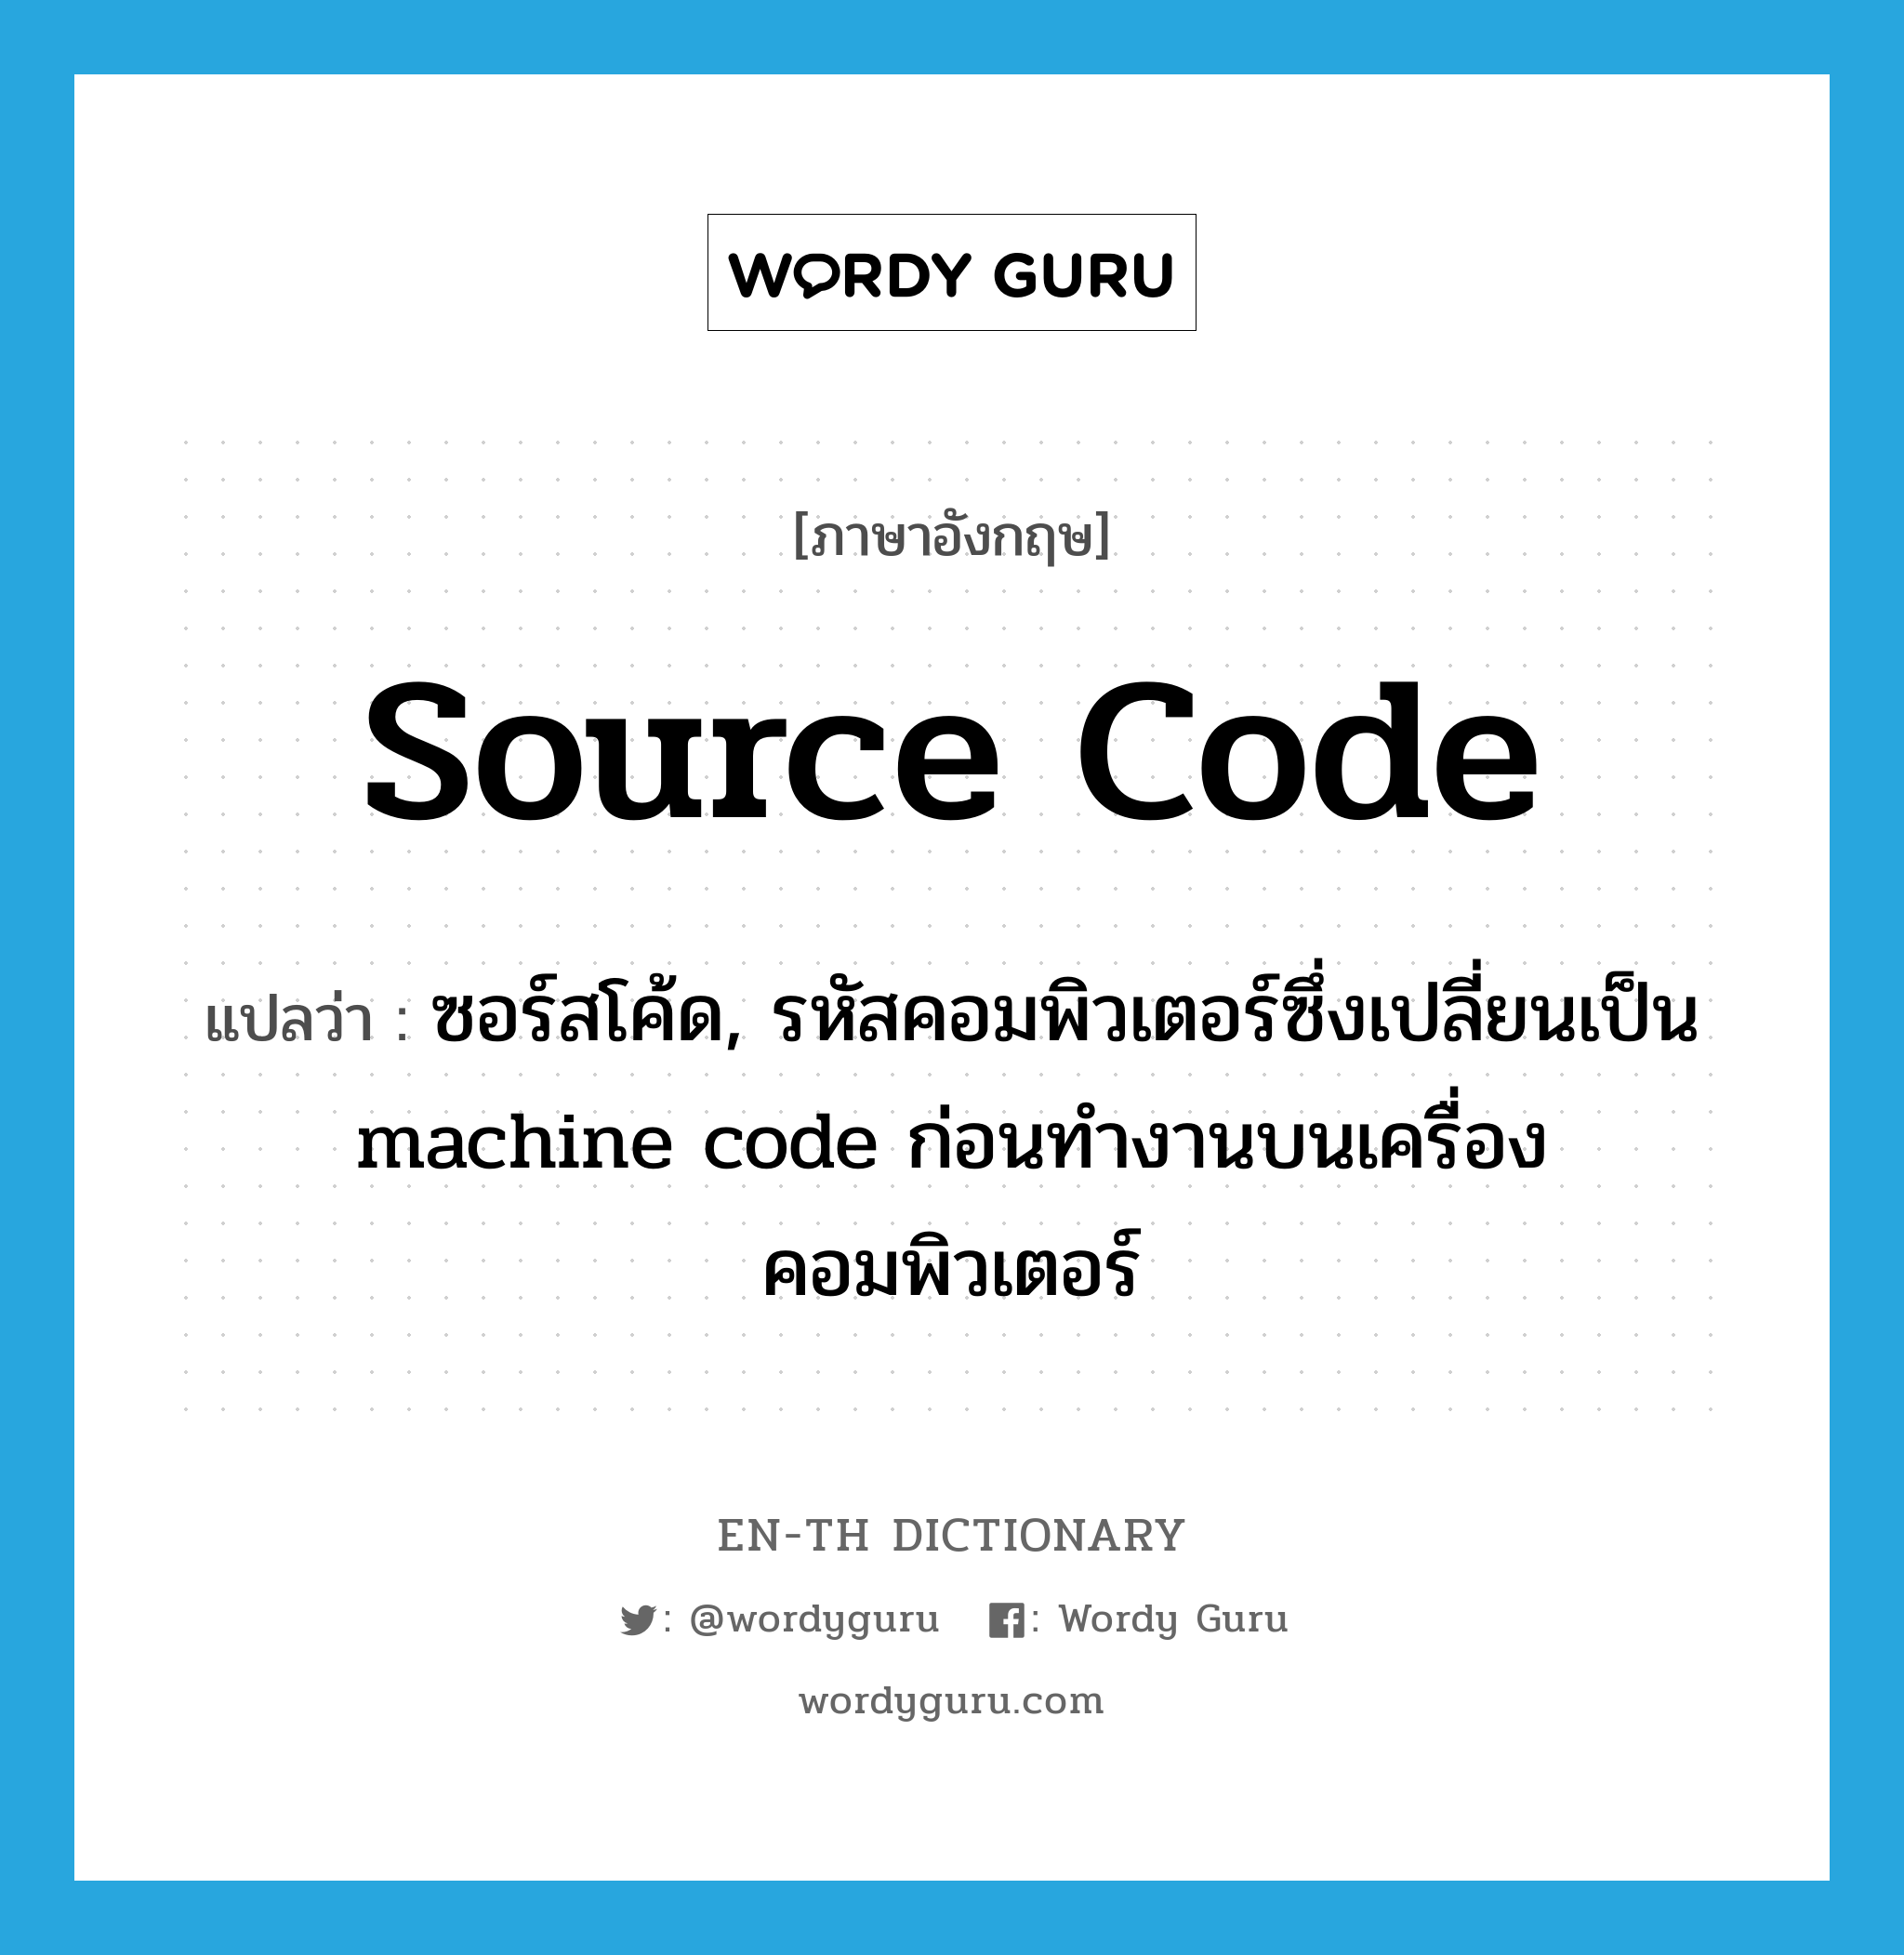 ซอร์สโค้ด, รหัสคอมพิวเตอร์ซึ่งเปลี่ยนเป็น machine code ก่อนทำงานบนเครื่องคอมพิวเตอร์ ภาษาอังกฤษ?, คำศัพท์ภาษาอังกฤษ ซอร์สโค้ด, รหัสคอมพิวเตอร์ซึ่งเปลี่ยนเป็น machine code ก่อนทำงานบนเครื่องคอมพิวเตอร์ แปลว่า source code ประเภท N หมวด N